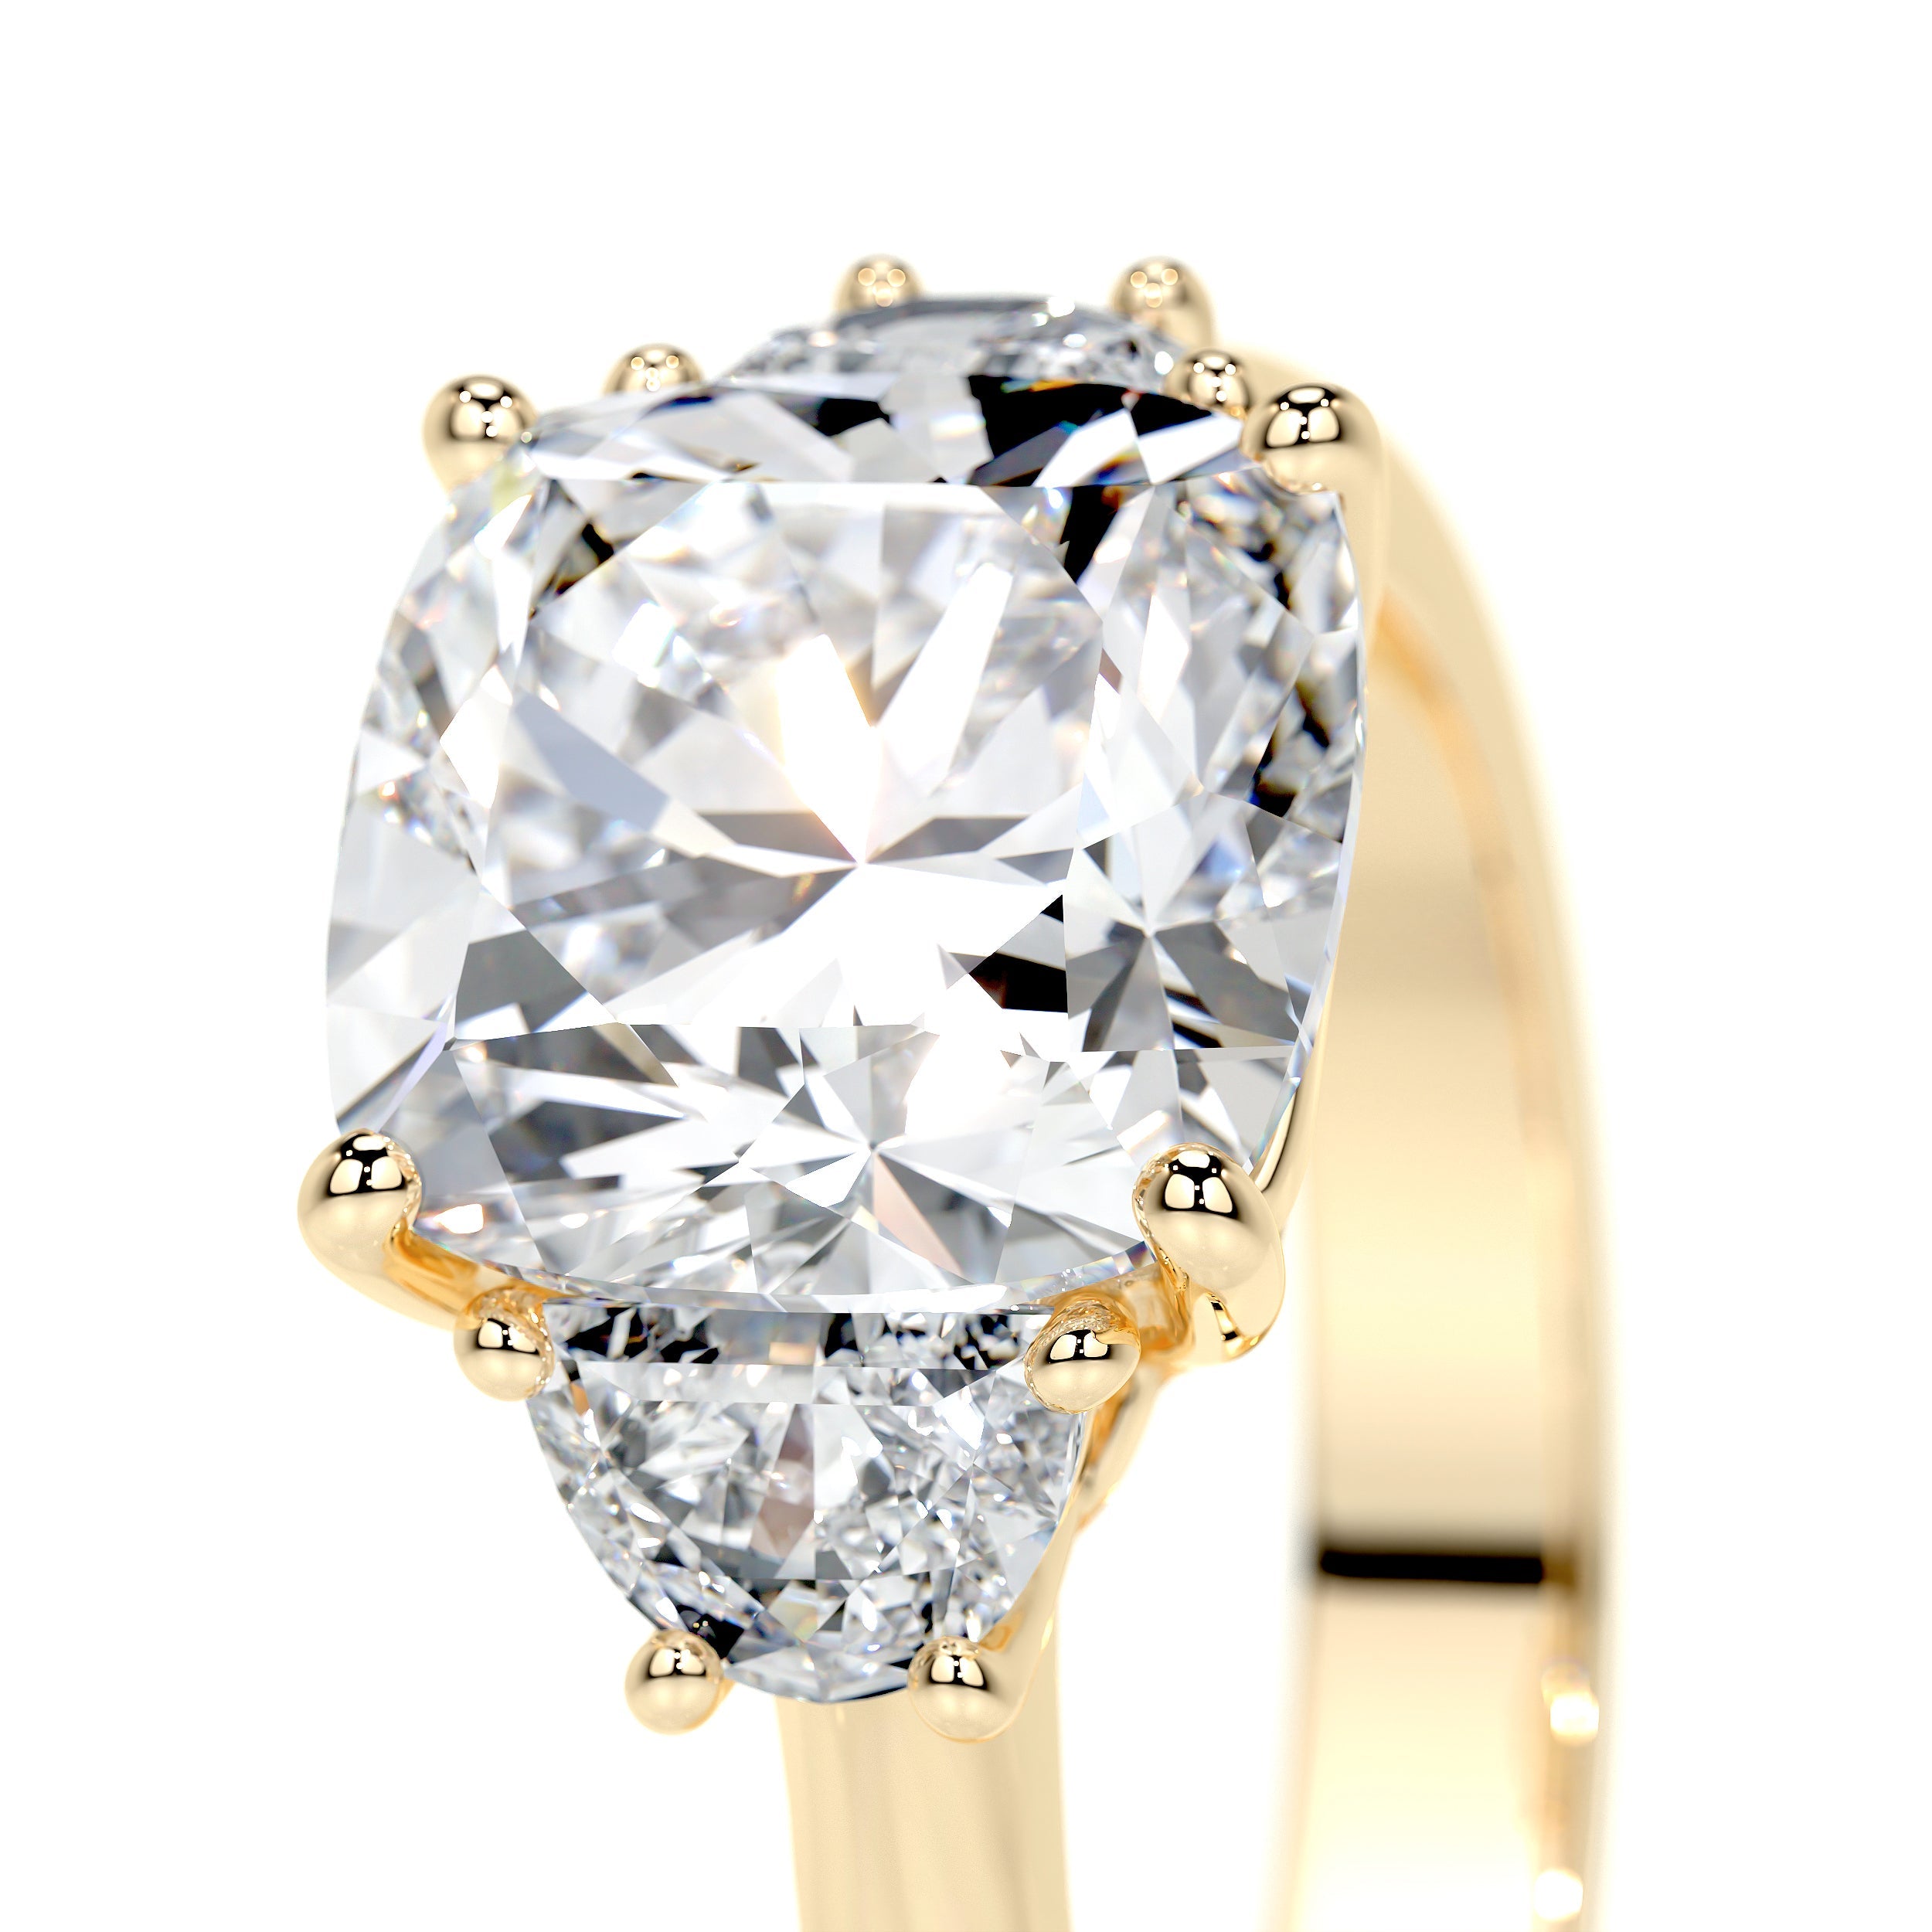 Whitney Lab Grown Diamond Ring -18K Yellow Gold